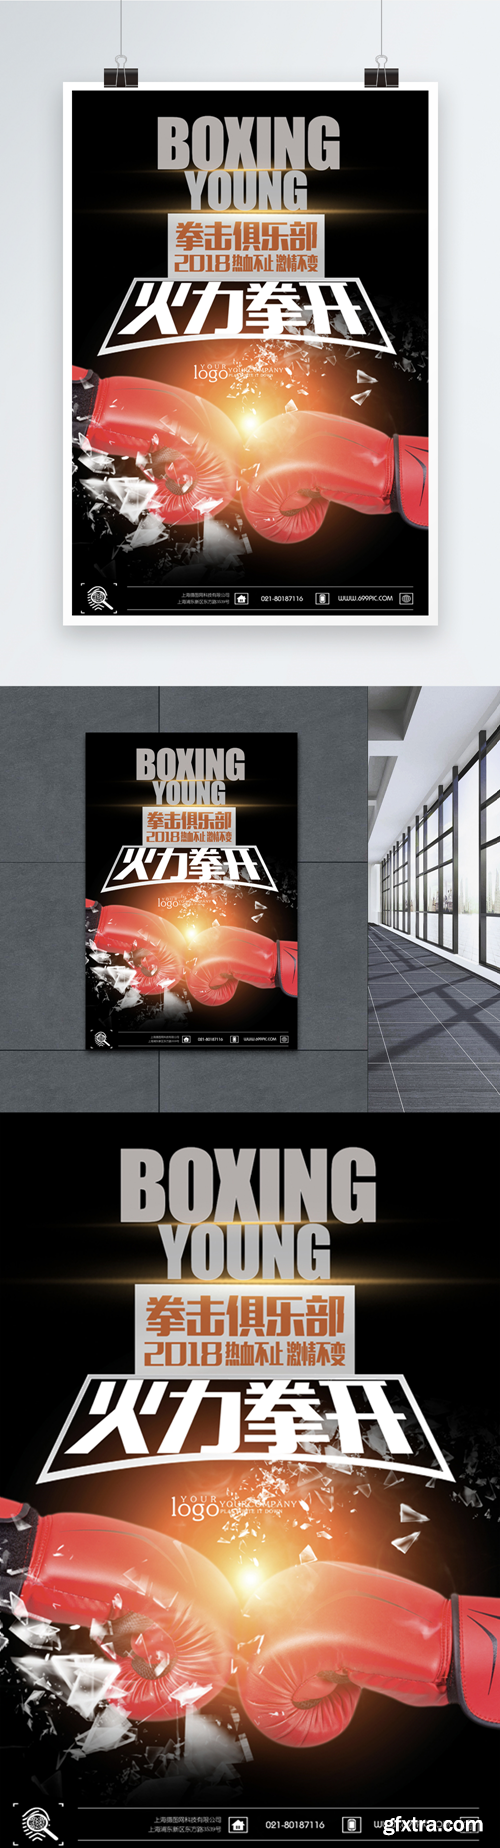 full boxer fire poster